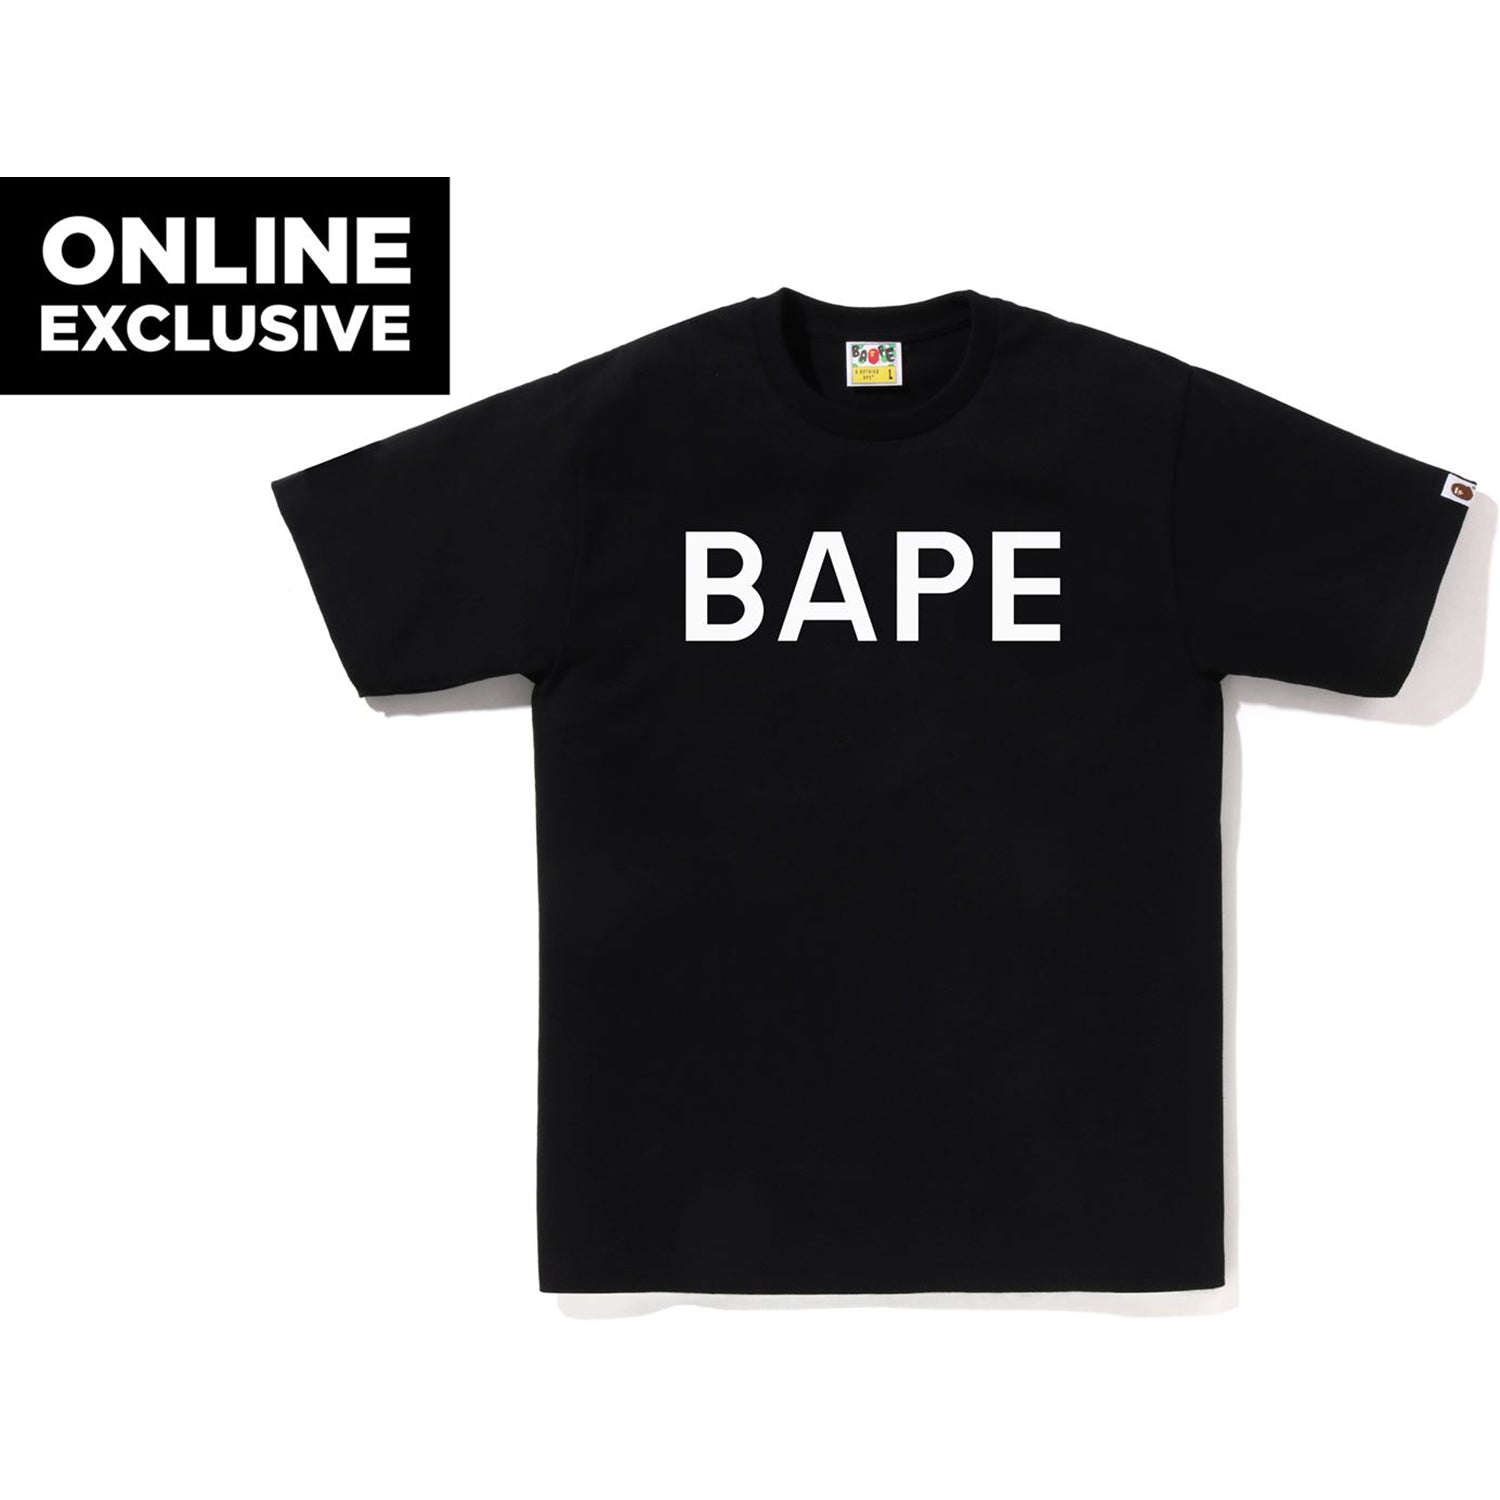 BAPE Online Exclusive College Tee Black